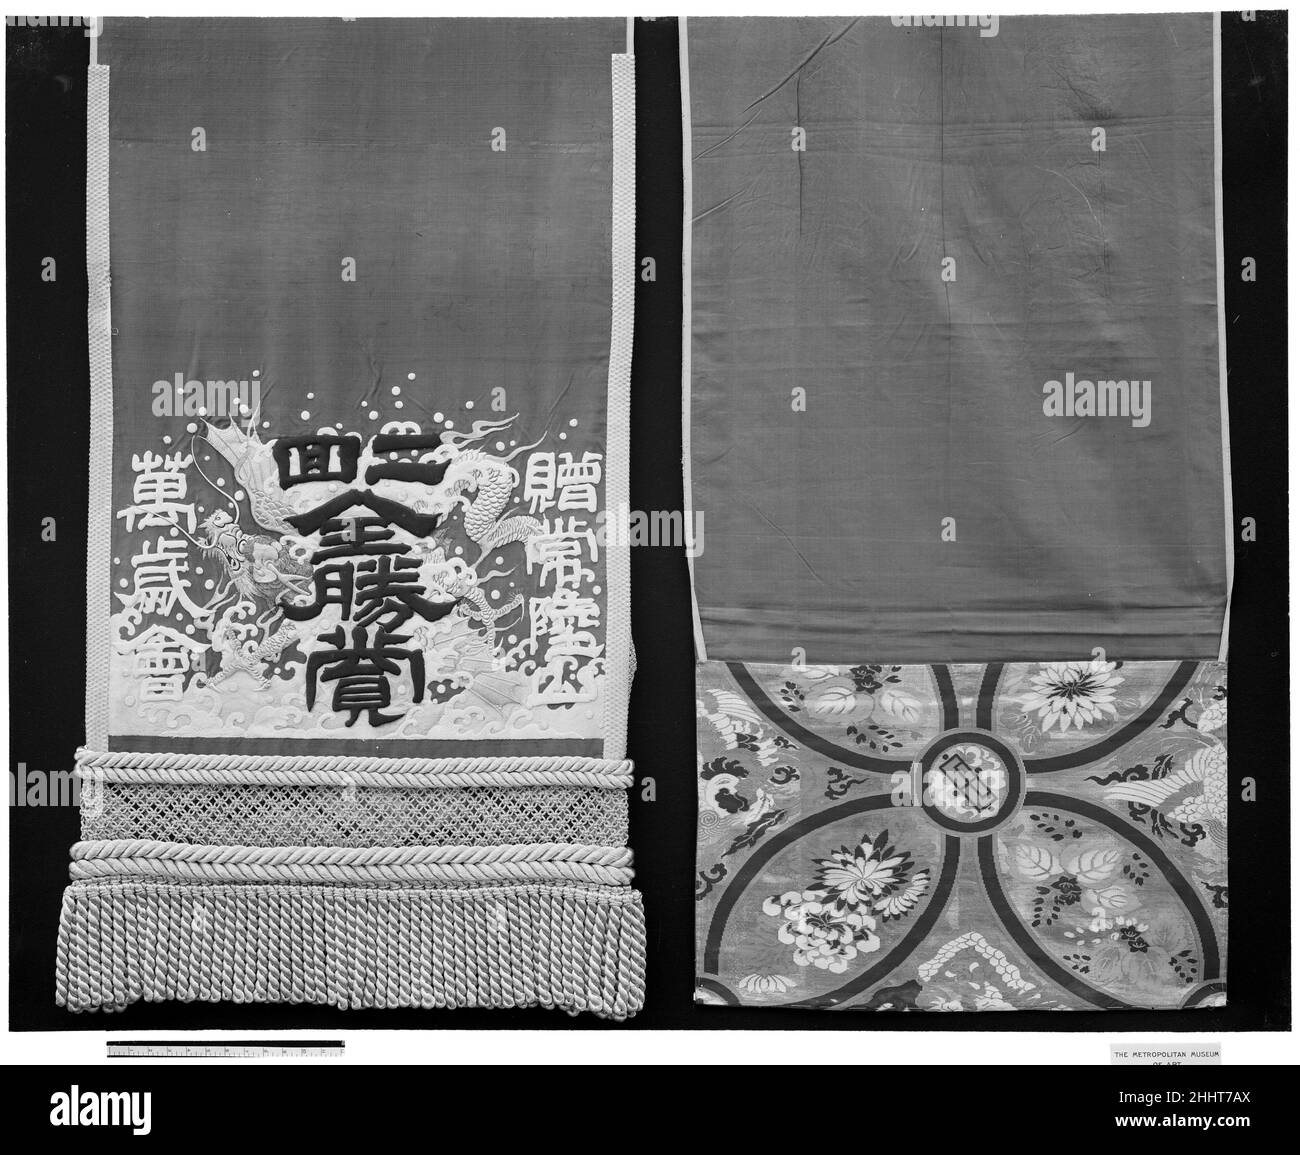 Costume de lutte 19th siècle Japon.Costume de lutte.Japon.19th siècle.Soie ; or / broderie.Textiles-costumes Banque D'Images